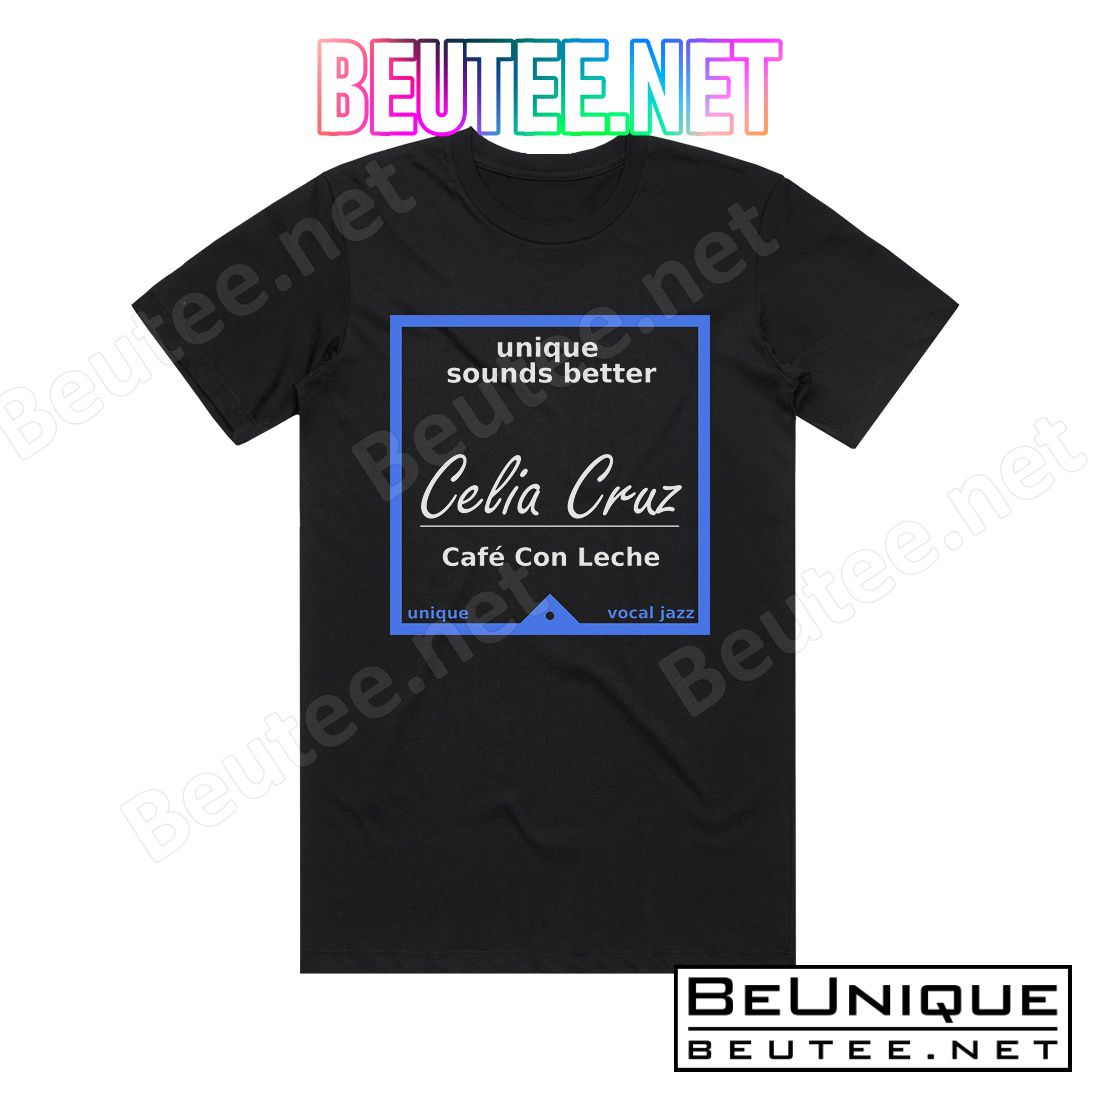 Celia Cruz Cafe Con Leche Album Cover T-Shirt